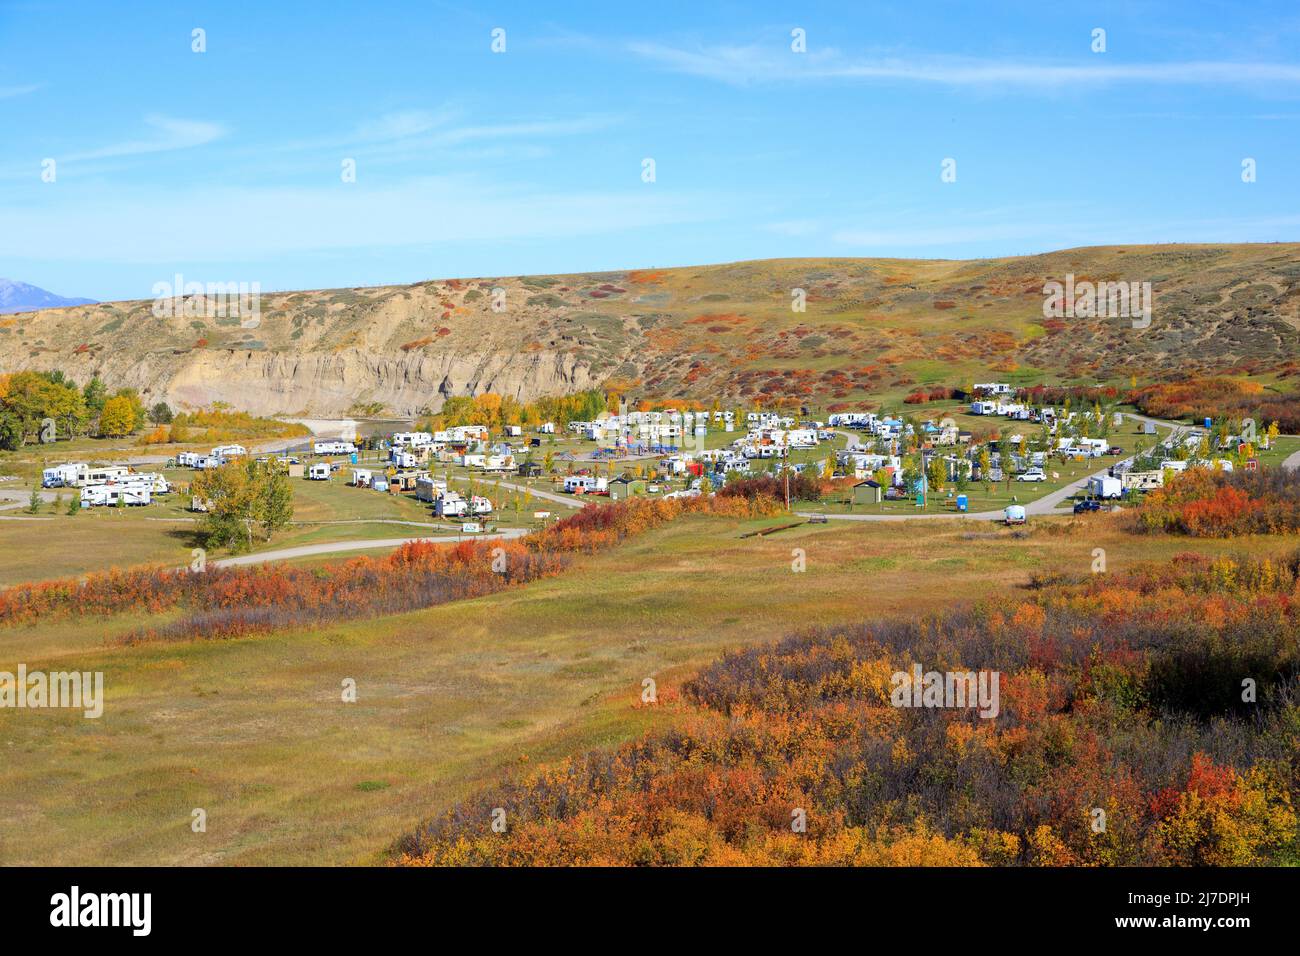 Ein Camping-Campingplatz mit Wohnmobilstellplätzen in der Nähe von Pincher Creek und Lundbreck Alberta, Kanada. Stockfoto